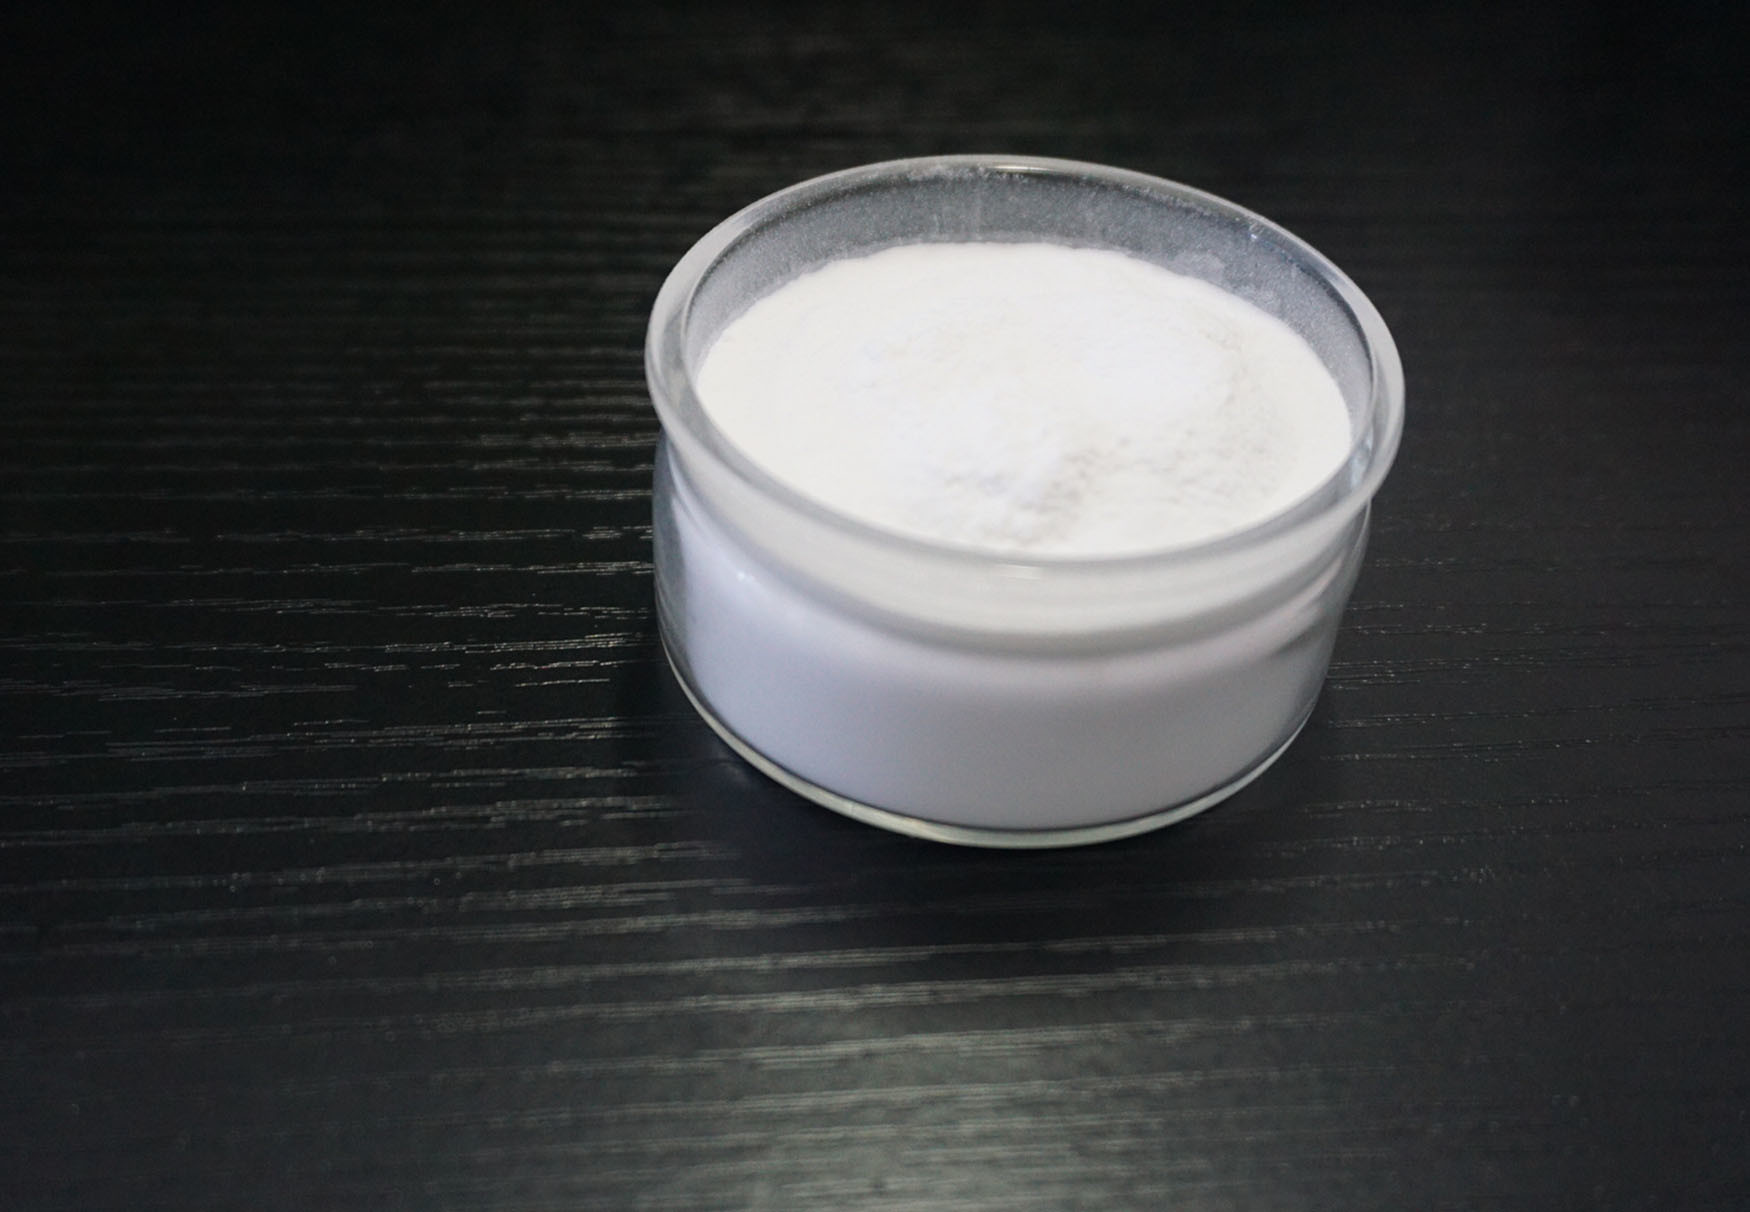 Υλική μελαμίνη επιτραπέζιου σκεύους μελαμινών που φορμάρει το σύνθετο πλαστικό άσπρο χρώμα